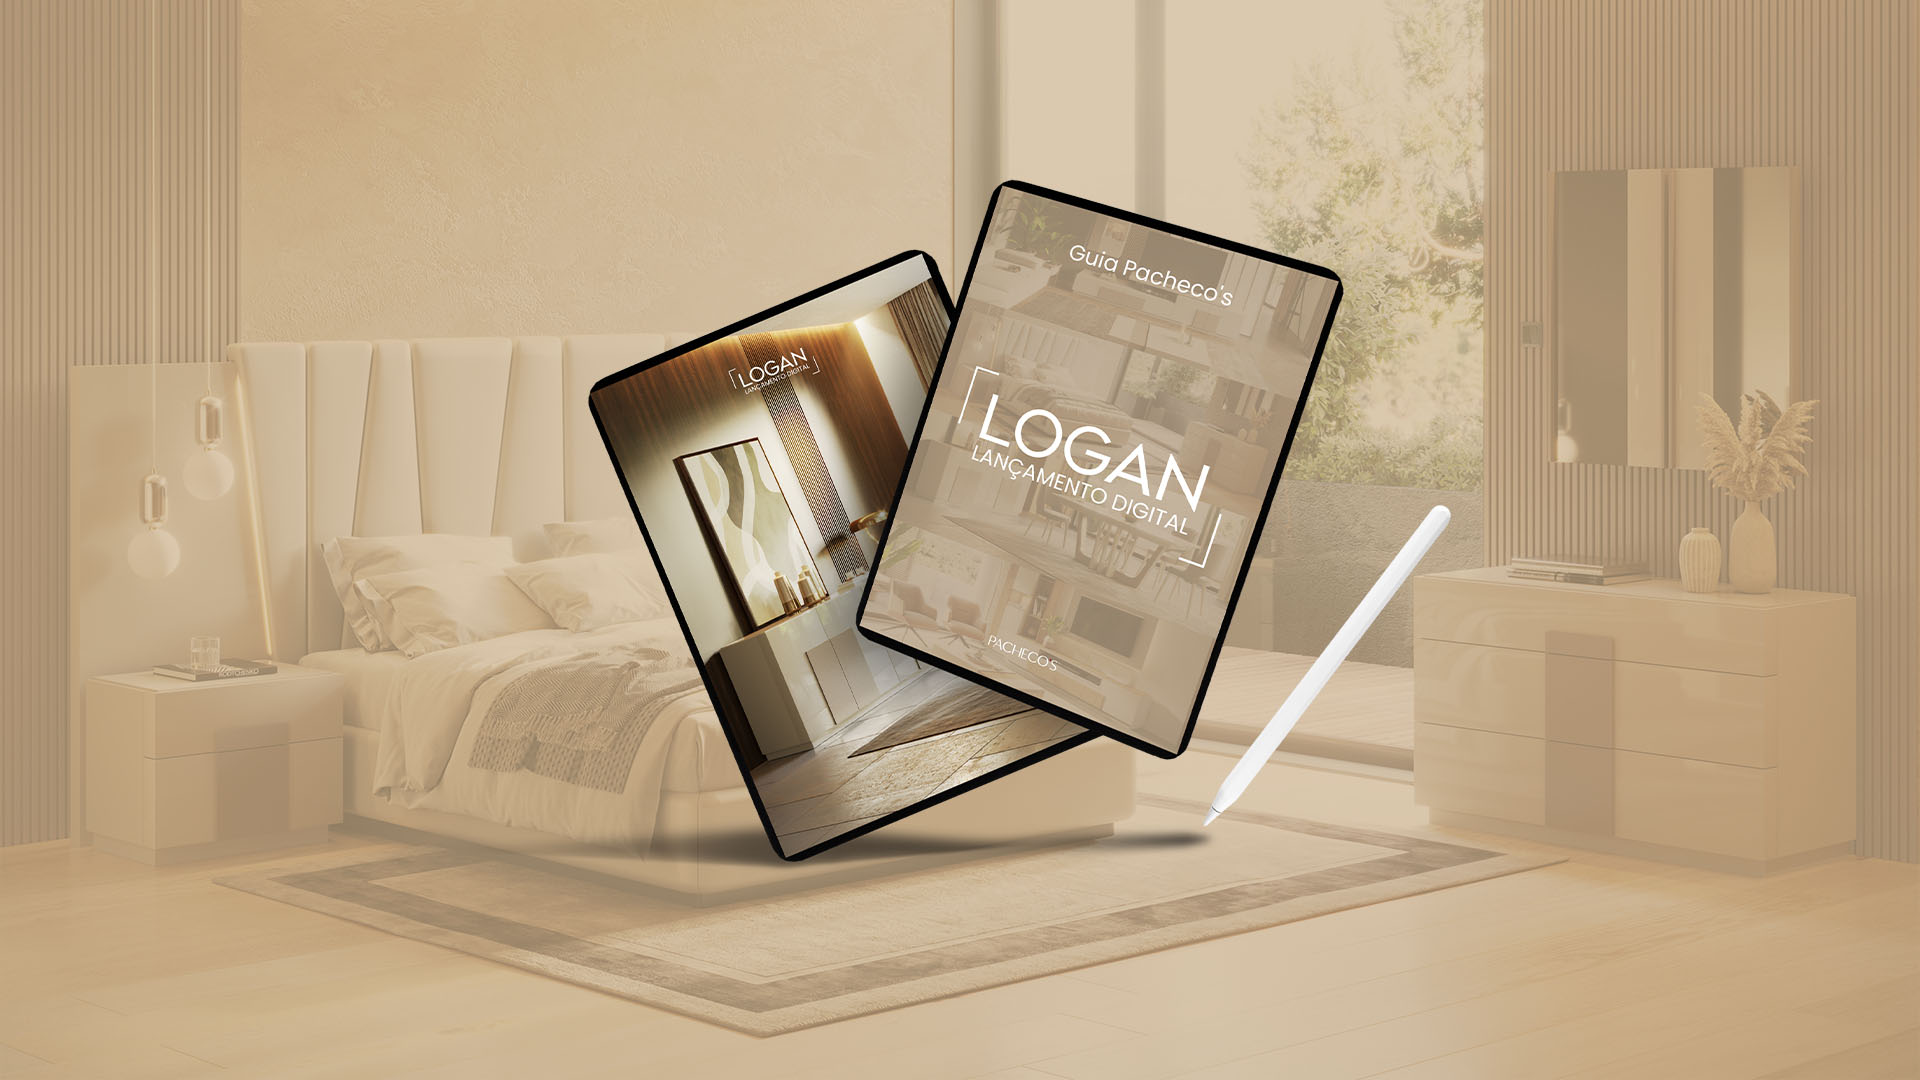 Dois tablets com mockups do Guia Pacheco's sobre o lançamento da coleção Logan